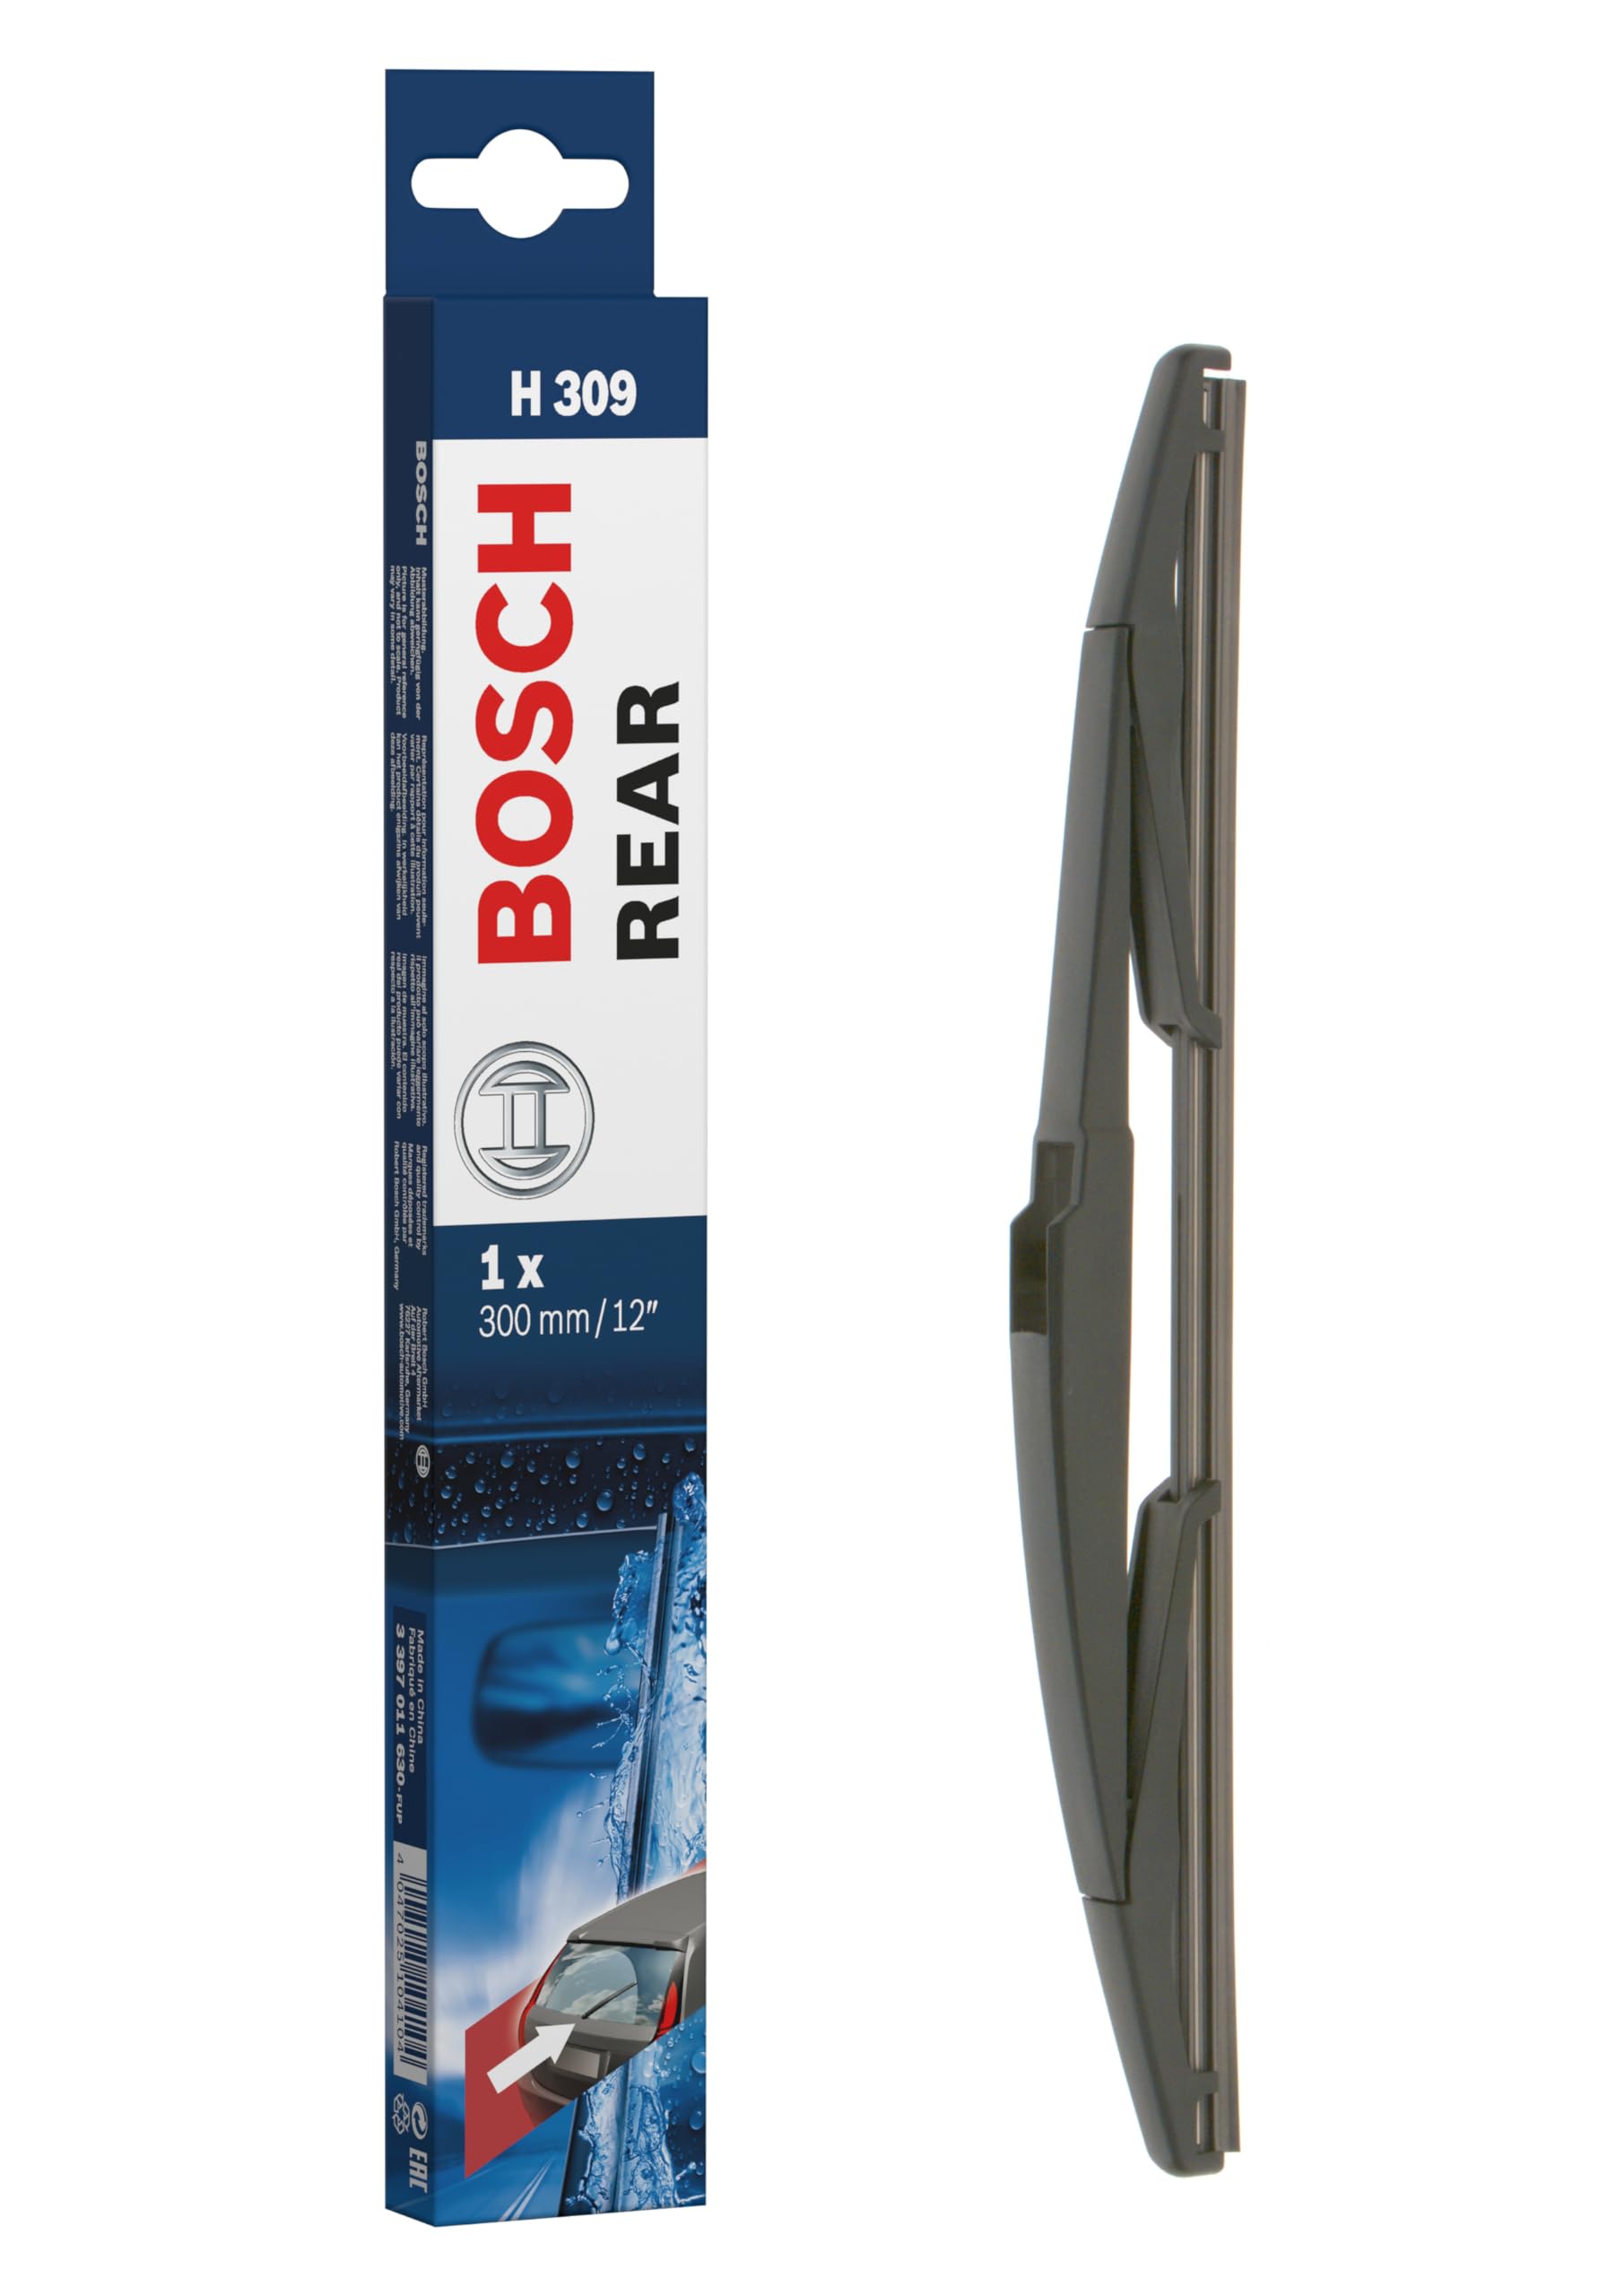 Bosch Scheibenwischer Rear H309, Länge: 300mm – Scheibenwischer für Heckscheibe von Bosch Automotive